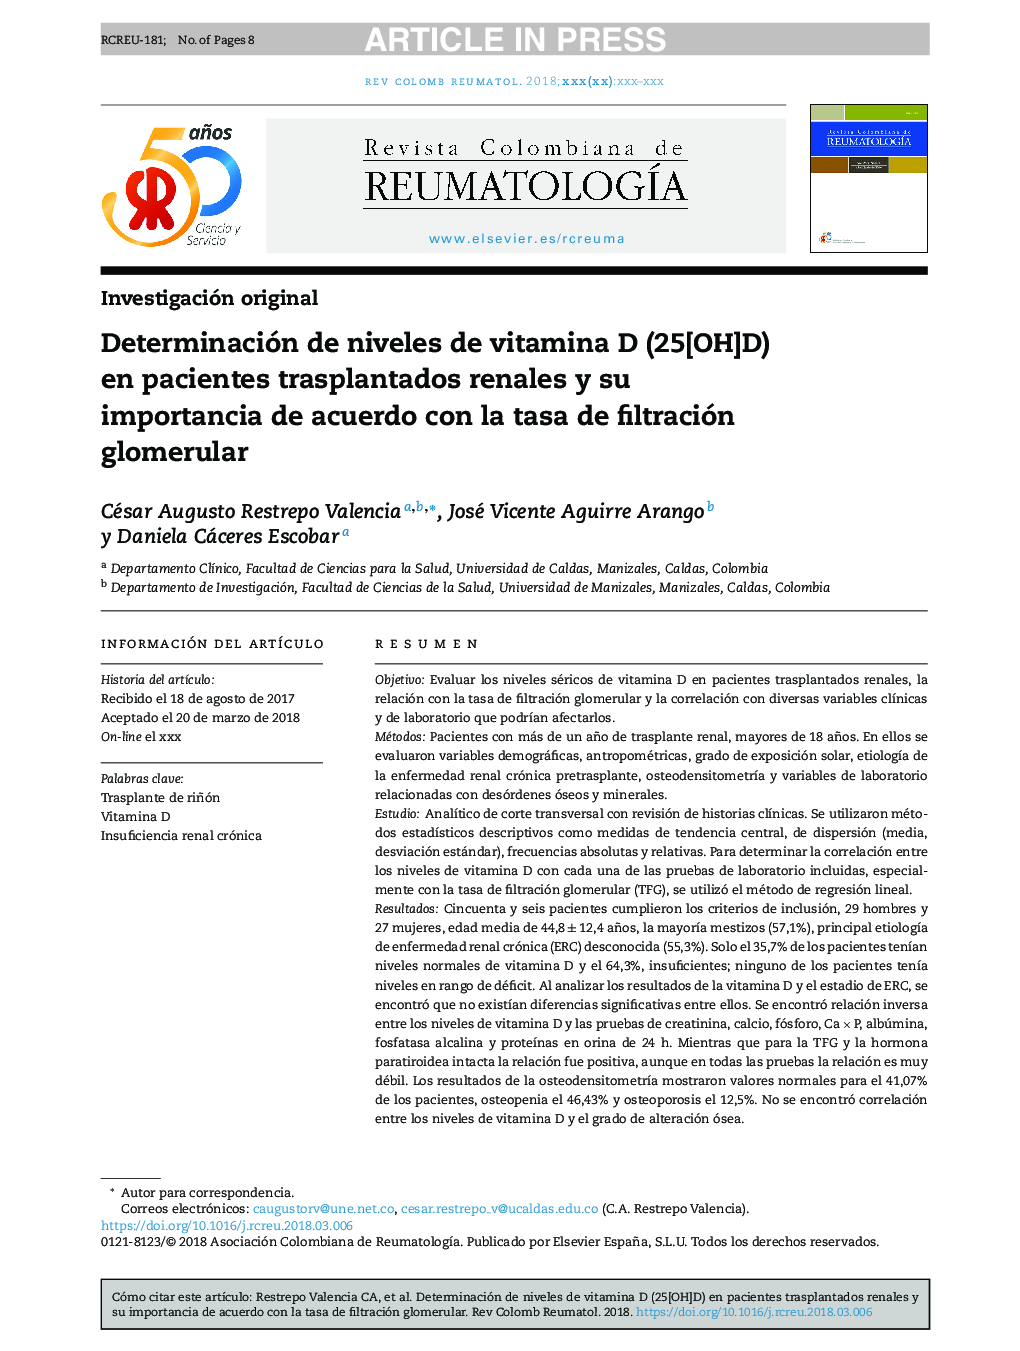 Determinación de niveles de vitamina D (25[OH]D) en pacientes trasplantados renales y su importancia de acuerdo con la tasa de filtración glomerular